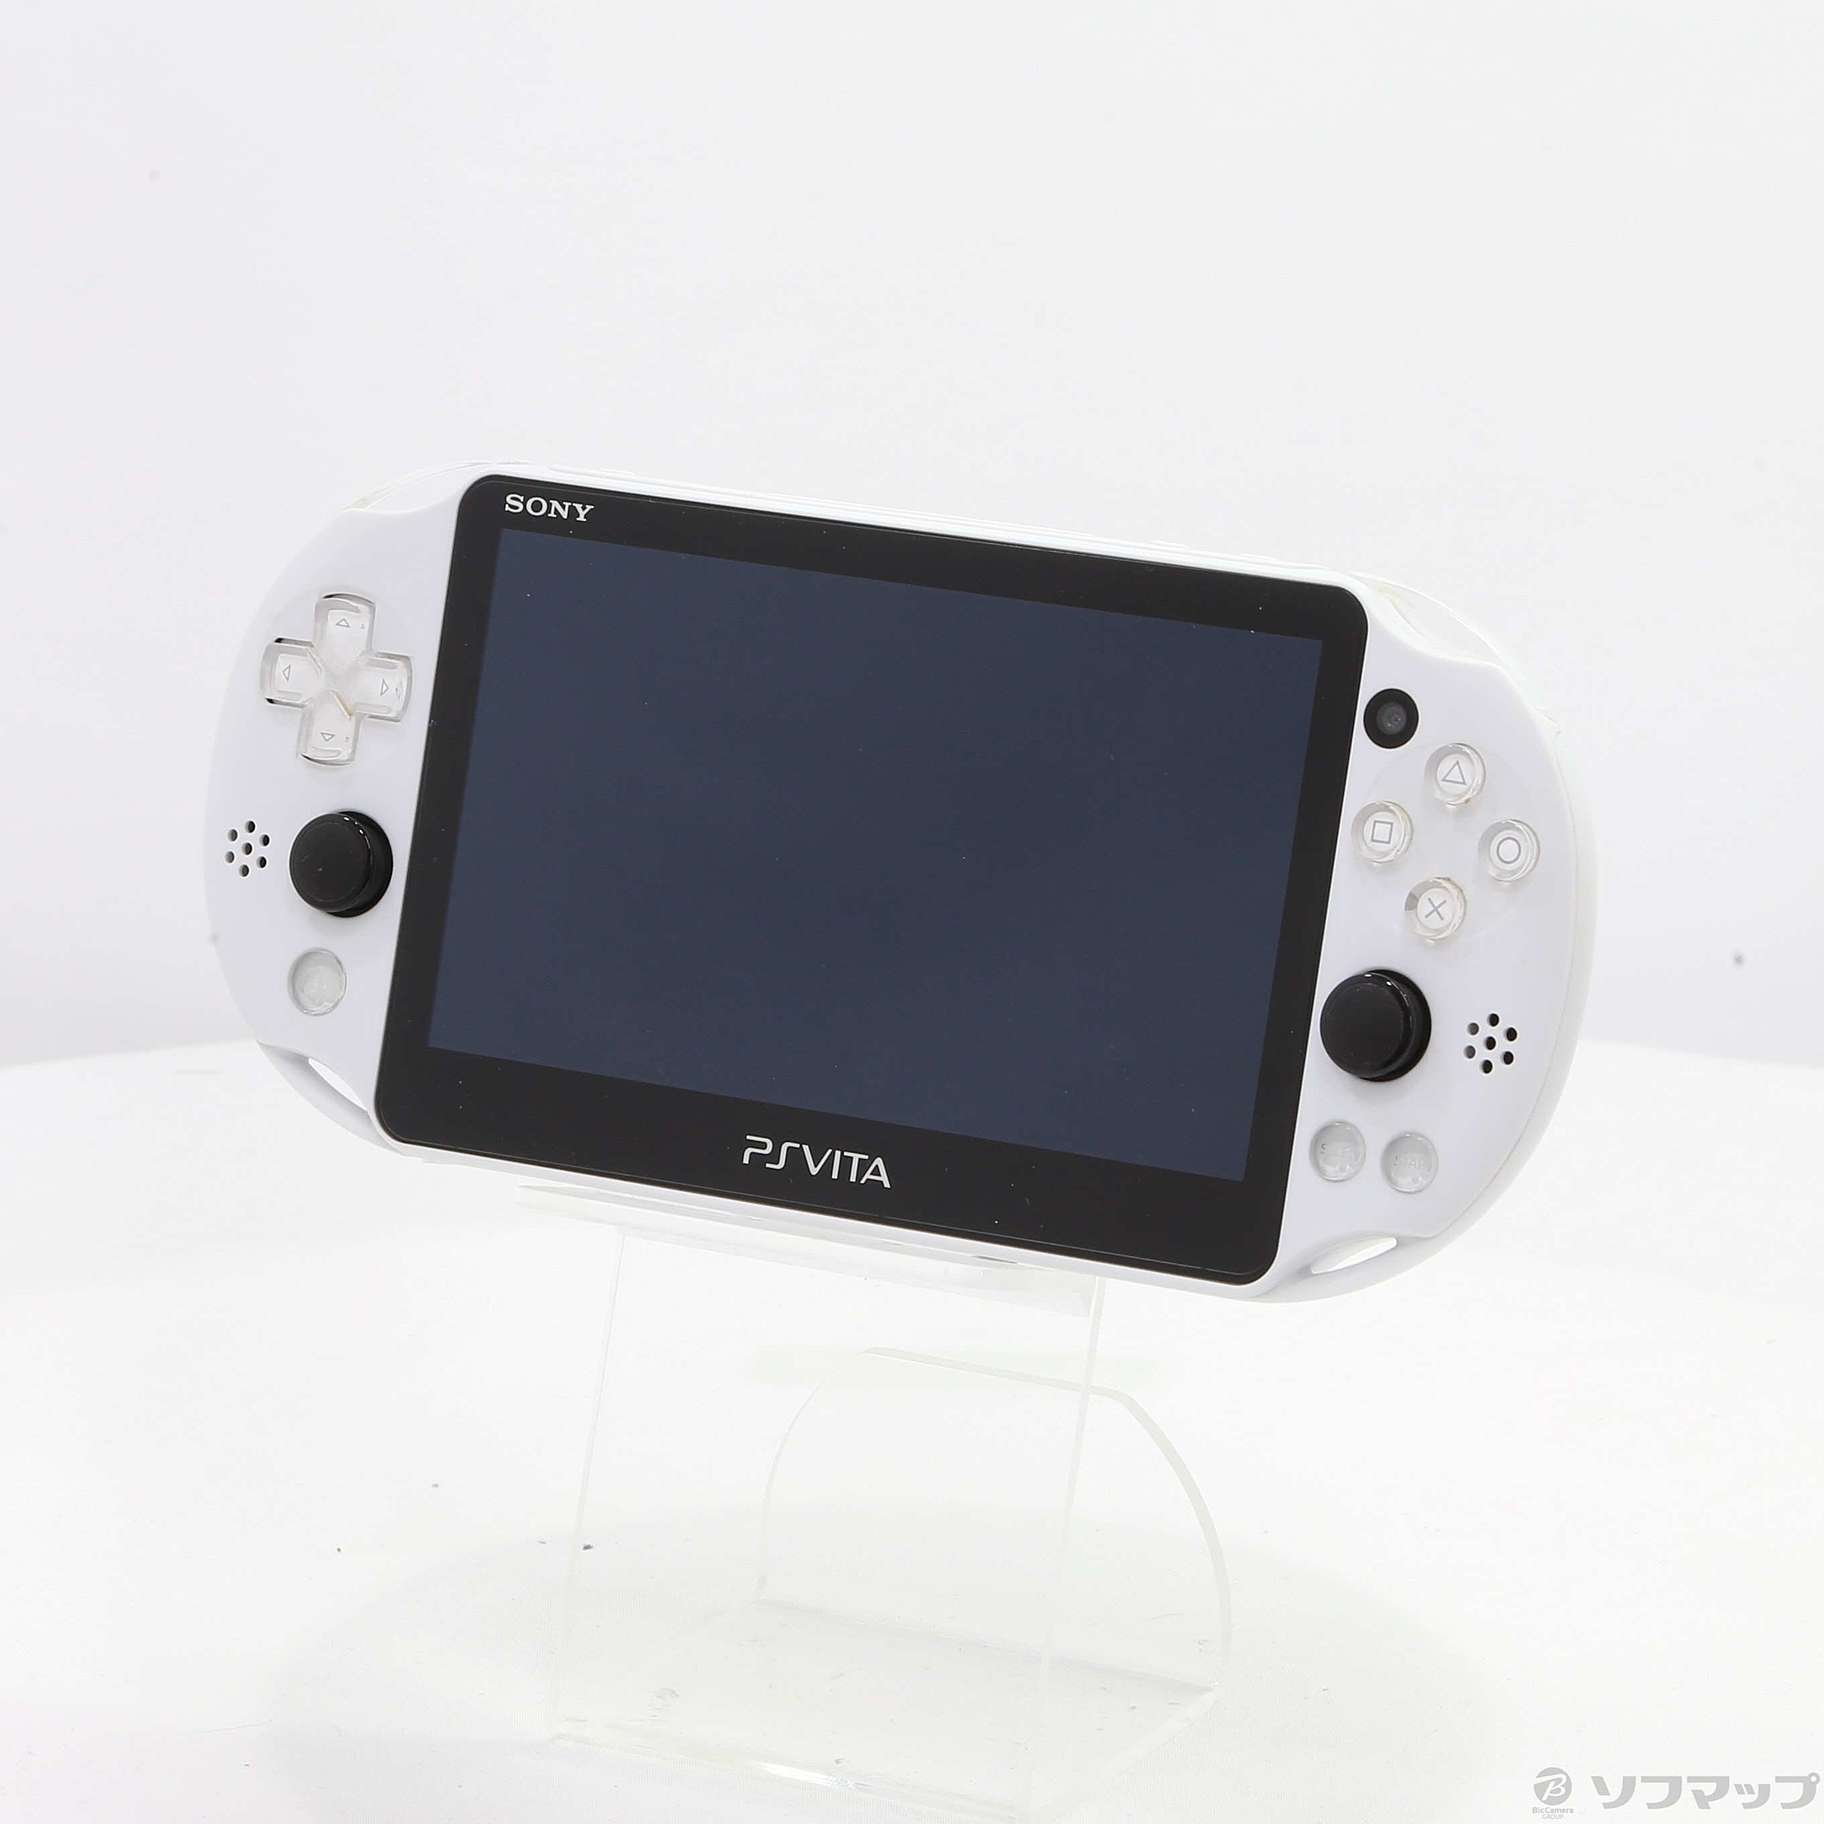 日本販売店舗 PlayStation 新品 グレイシャーホワイト PCH-2000 Vita 携帯用ゲーム本体